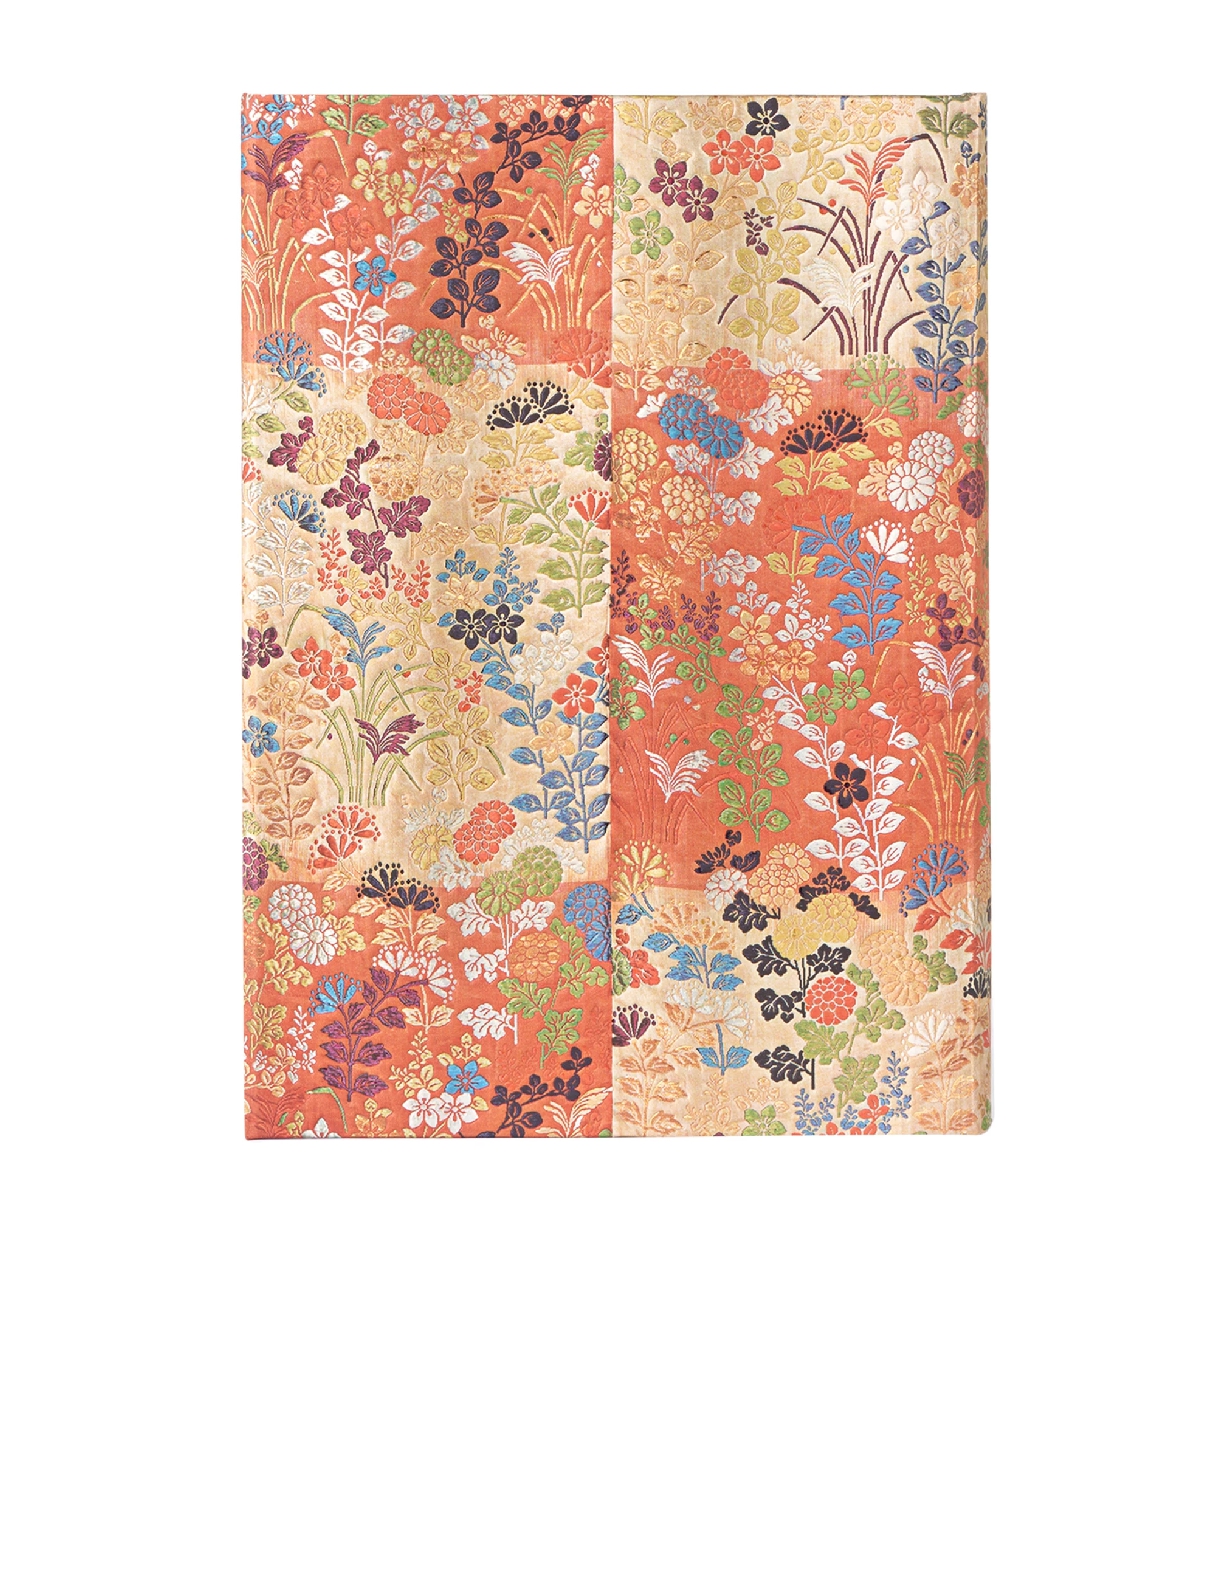 Kara-ori, Japanese Kimono, Midi, Address Book, Wrap, 144 Pg, 120 GSM